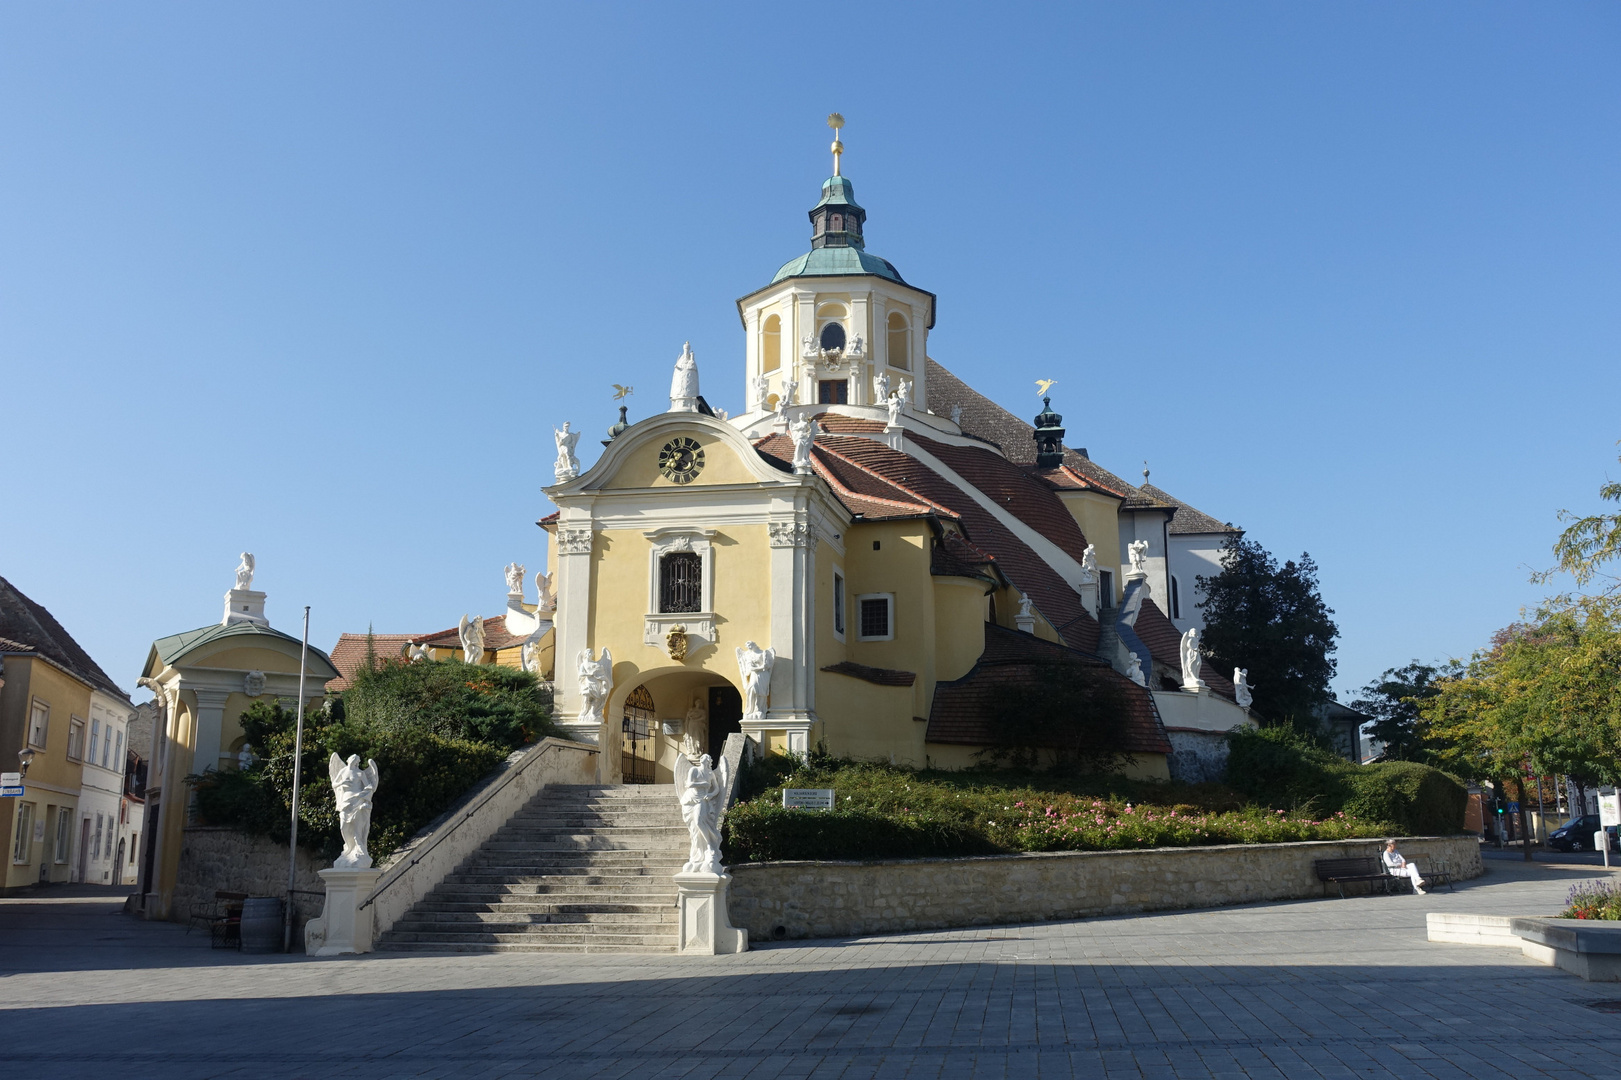 Bergkirche Eisenstadt